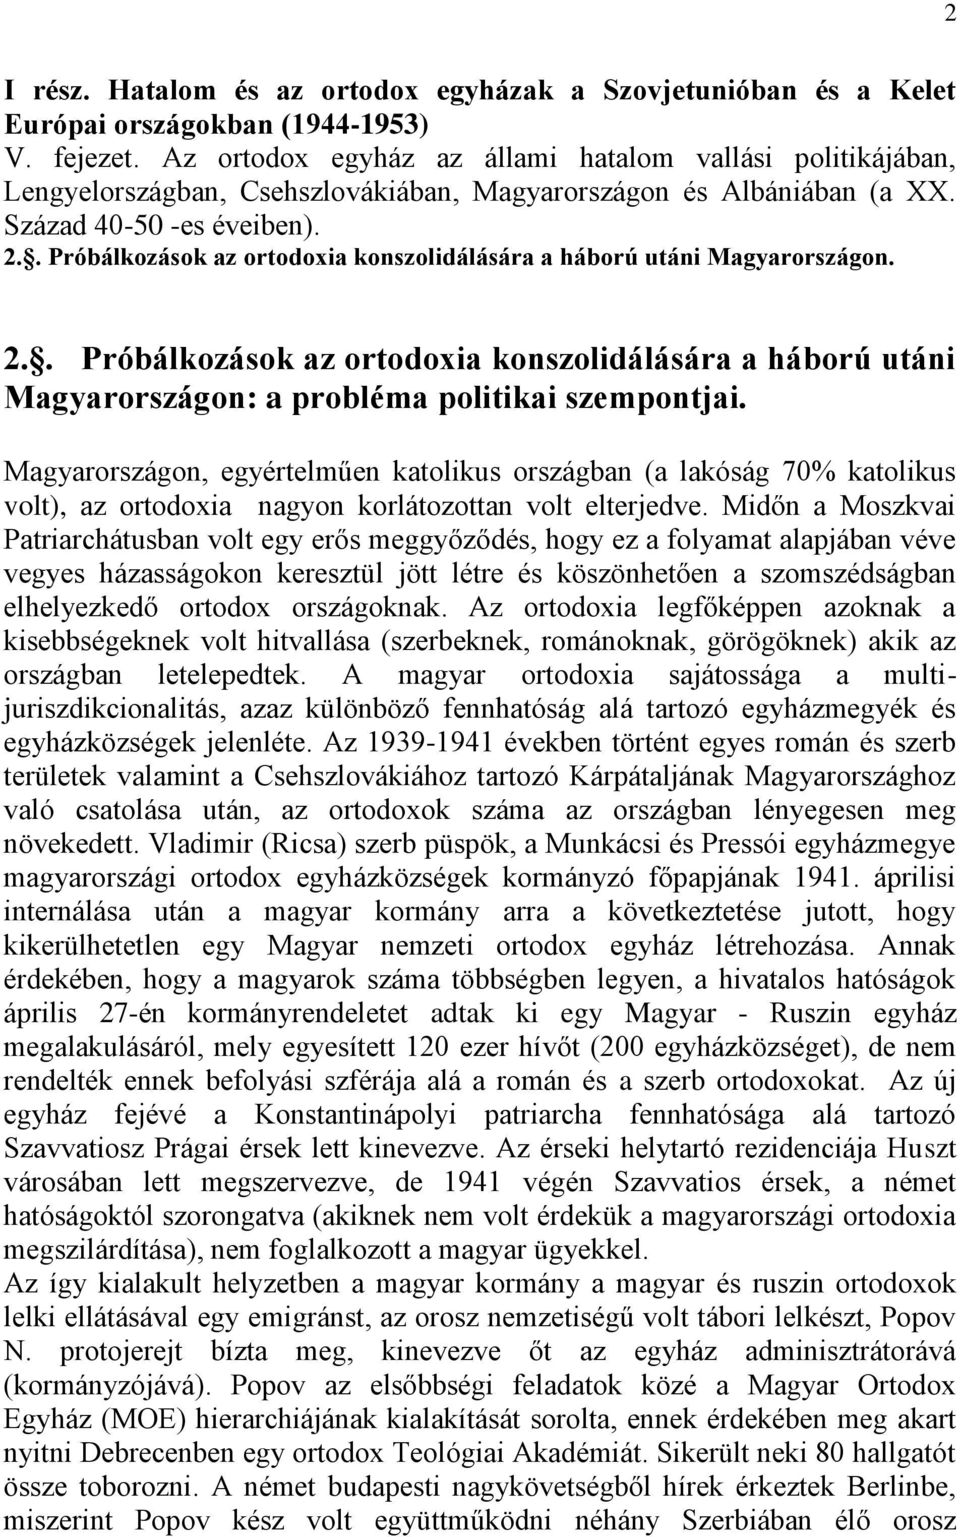 . Próbálkozások az ortodoxia konszolidálására a háború utáni Magyarországon. 2.. Próbálkozások az ortodoxia konszolidálására a háború utáni Magyarországon: a probléma politikai szempontjai.